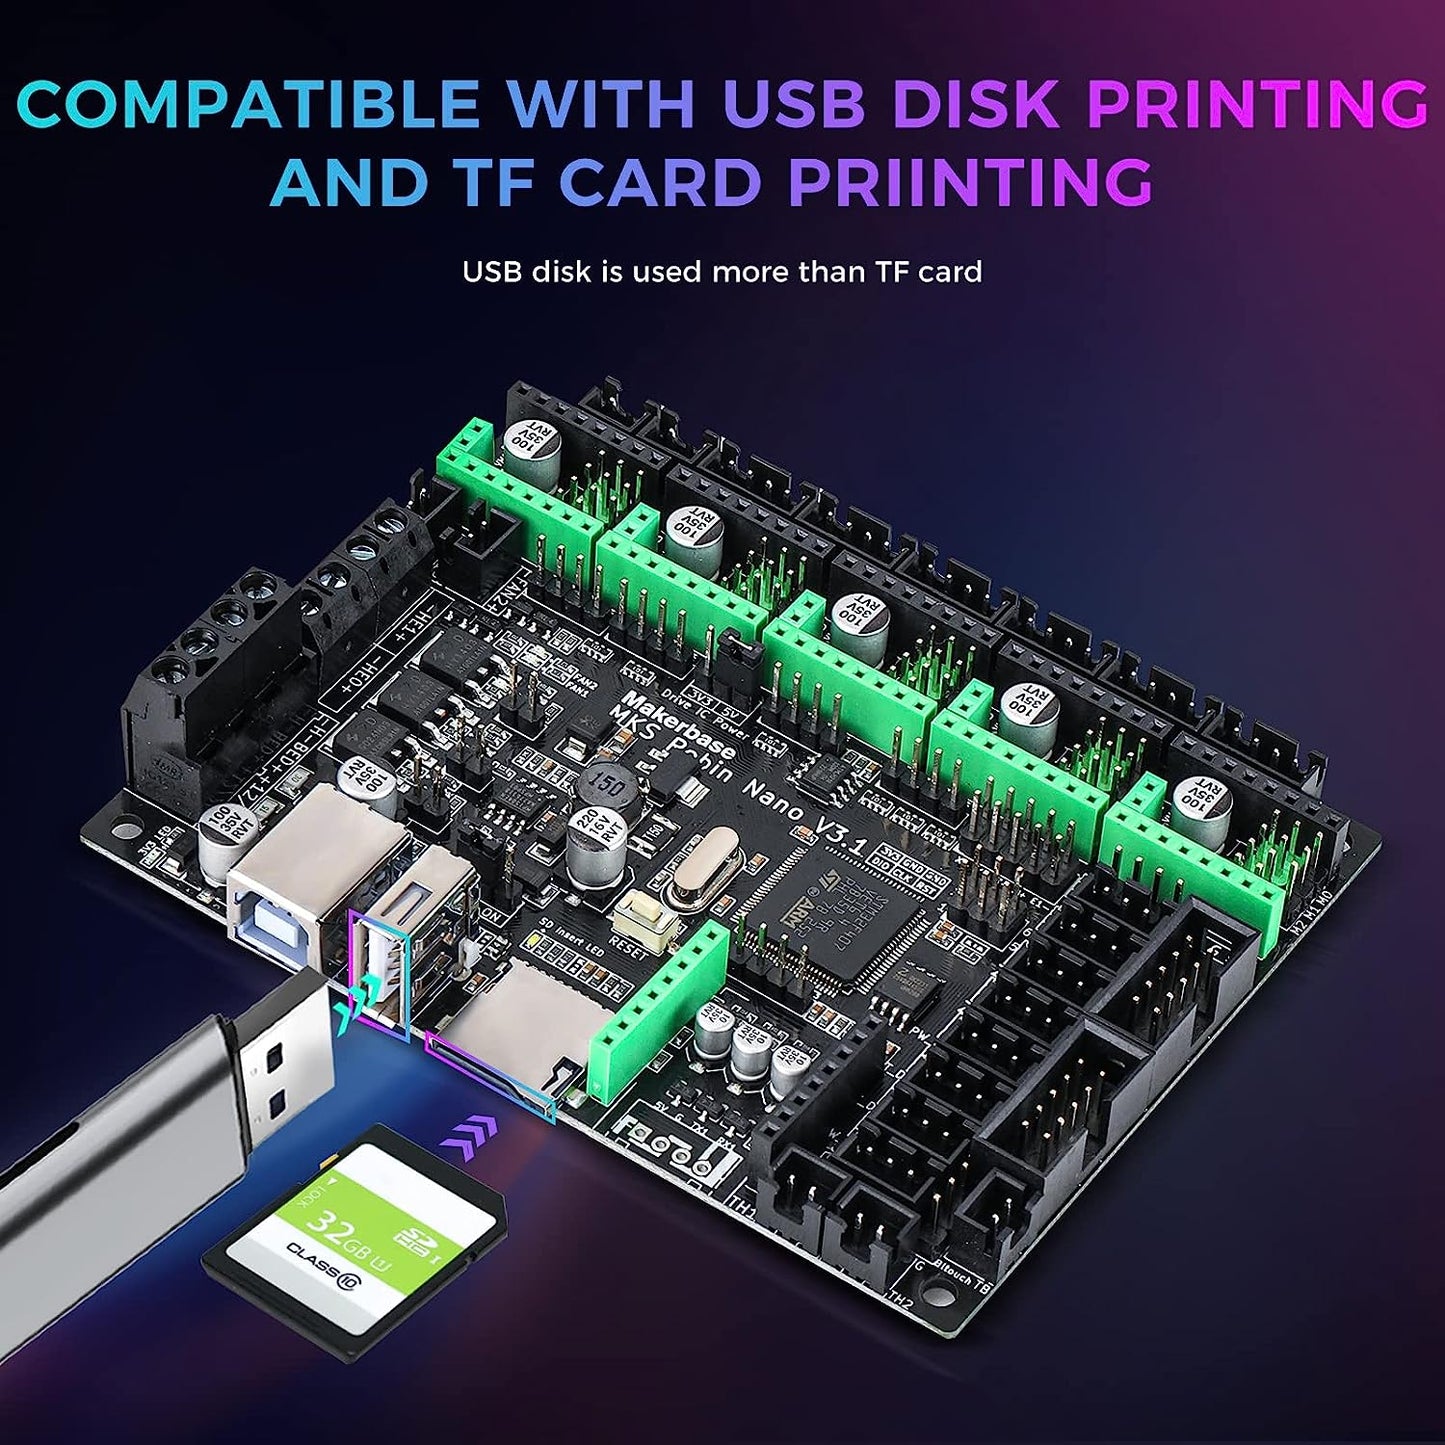 [MKS Robin Nano V3.1]Upgraded Motherboard For Creality Ender 3(Pro),Ender-3V2 3D Printer,Support Marlin 2.0.x, Klipper